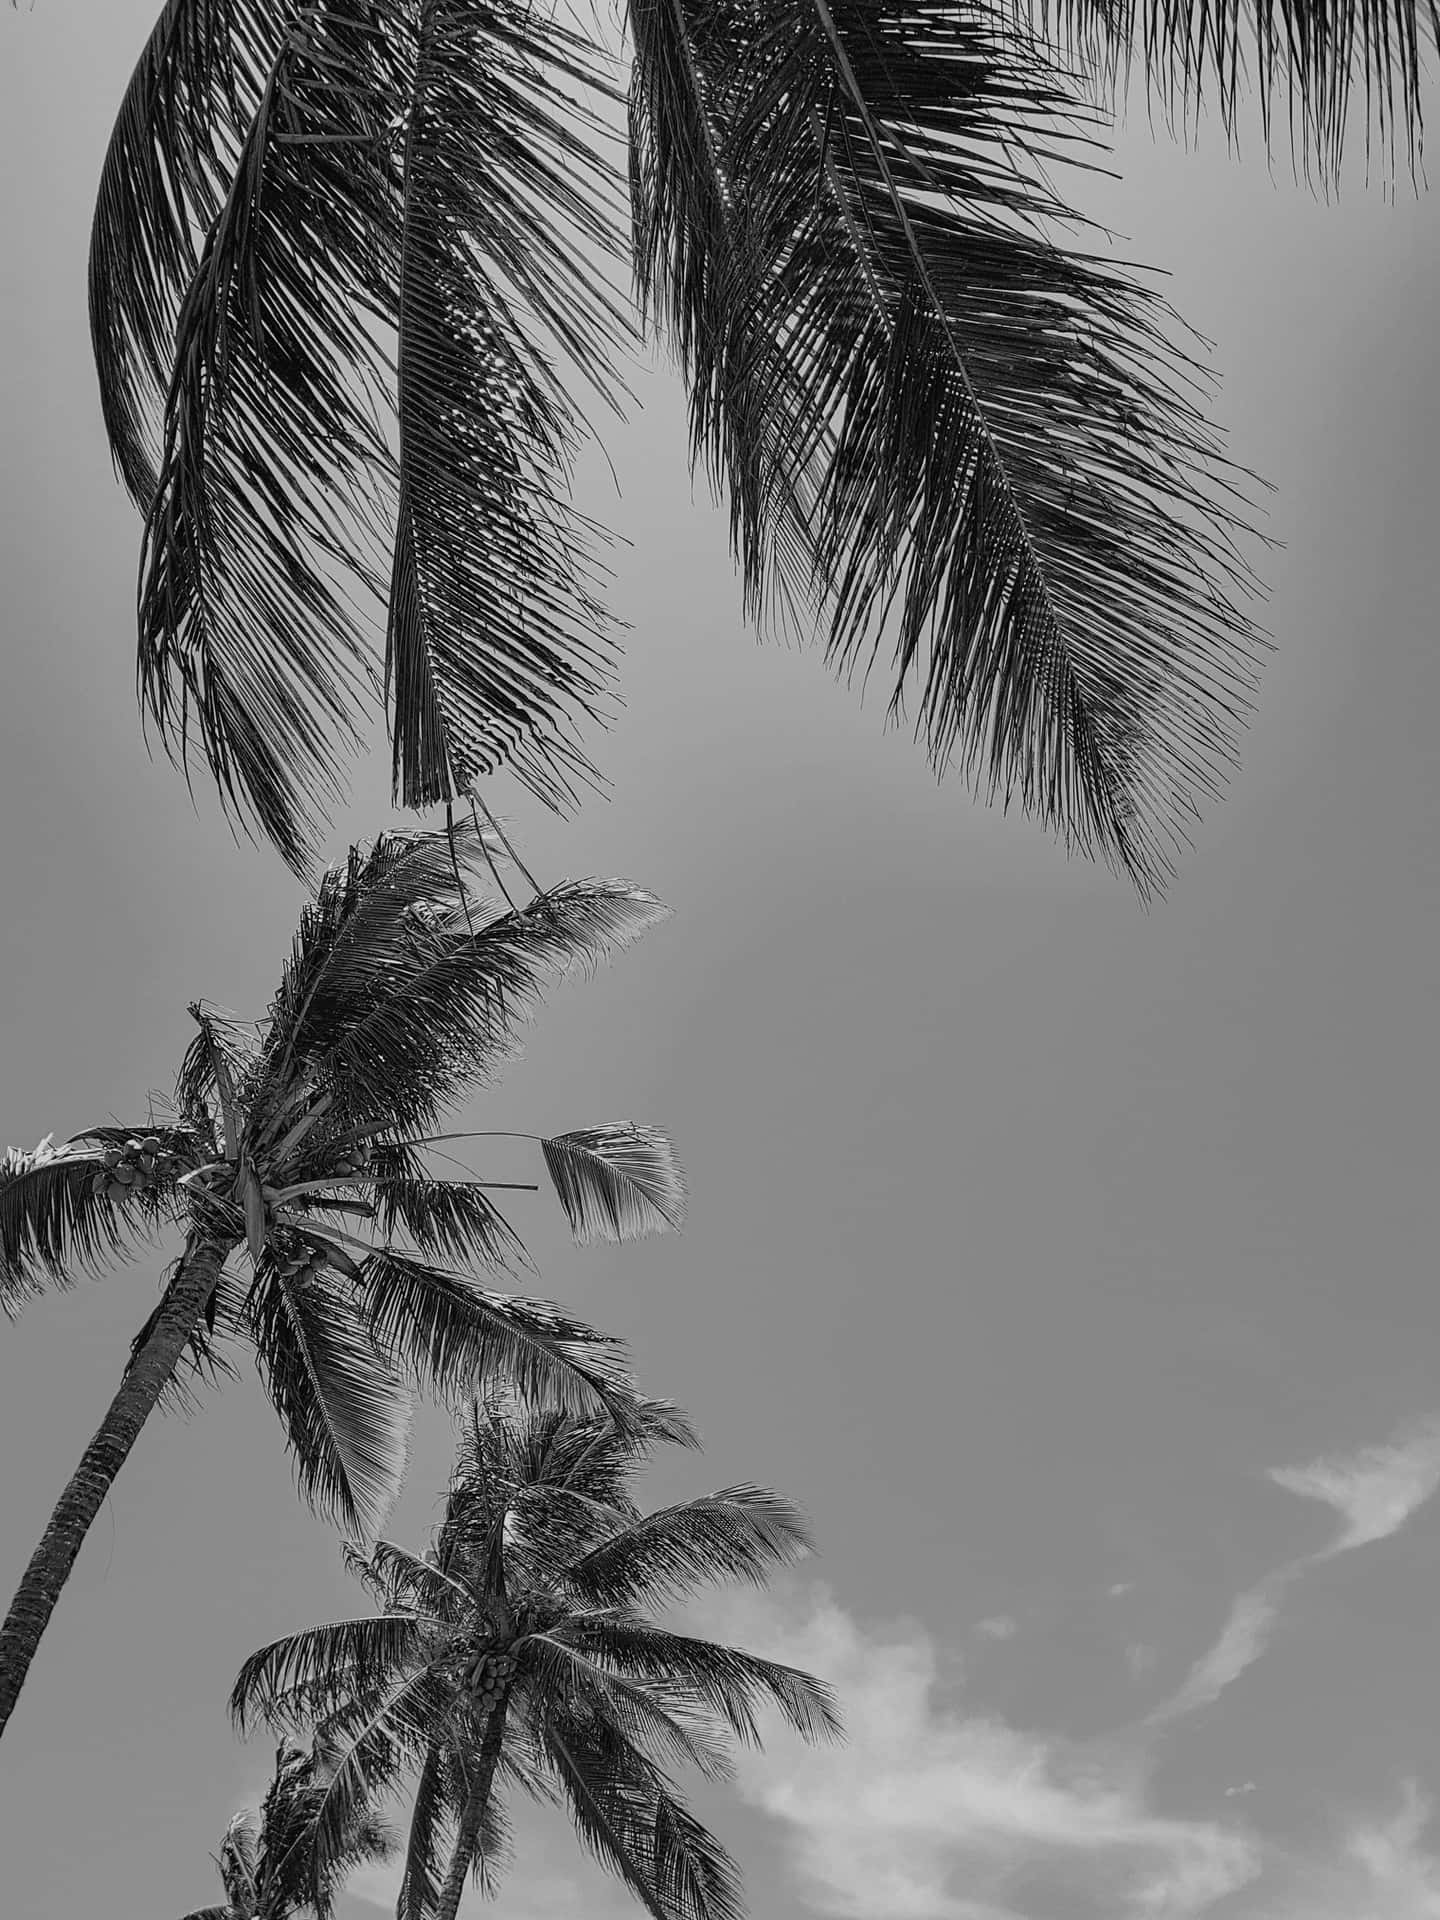 Unapalmera En Blanco Y Negro Se Encuentra En Una Playa Desierta. Fondo de pantalla